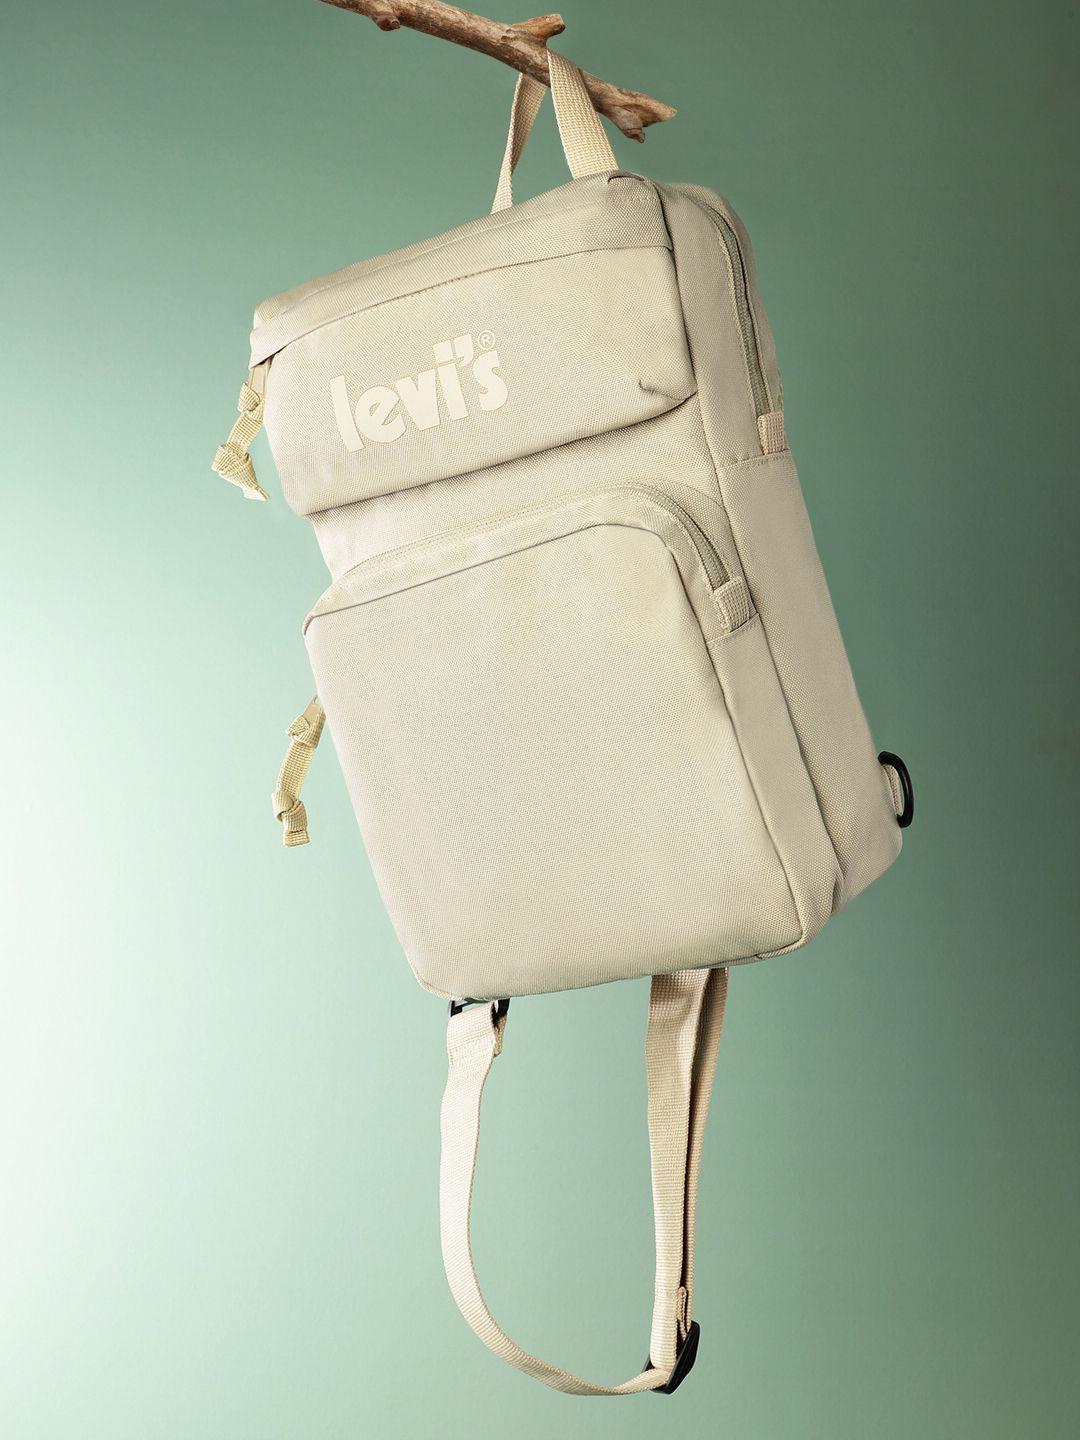 levis-men-backpack----6-ltr